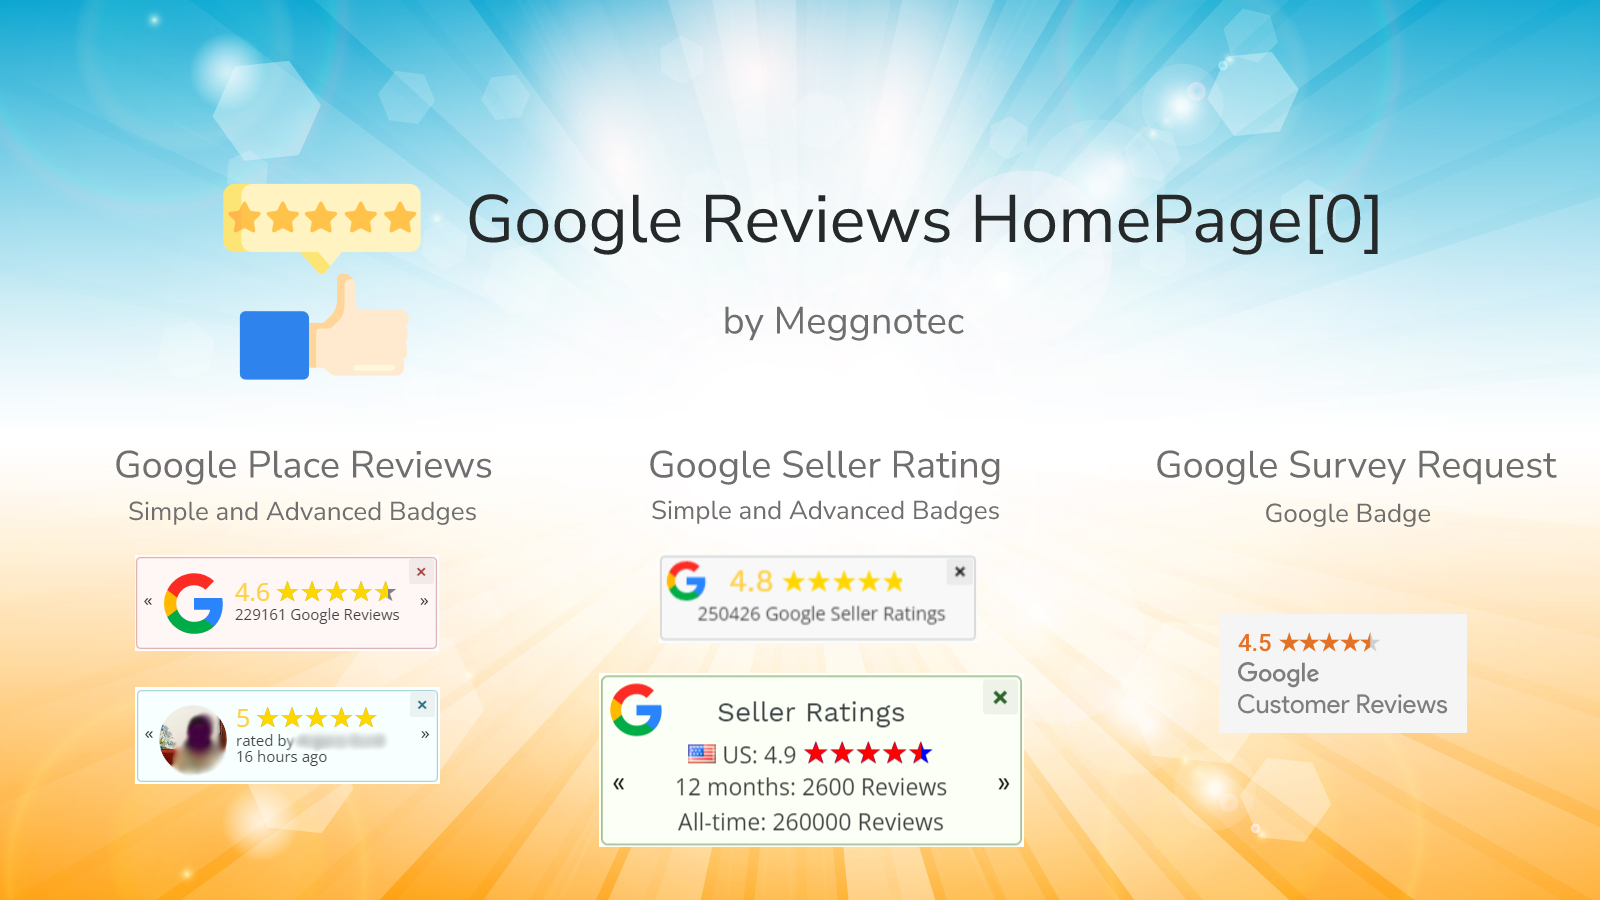 Google Reviews by HomePage[0]: Display star ratings in badges